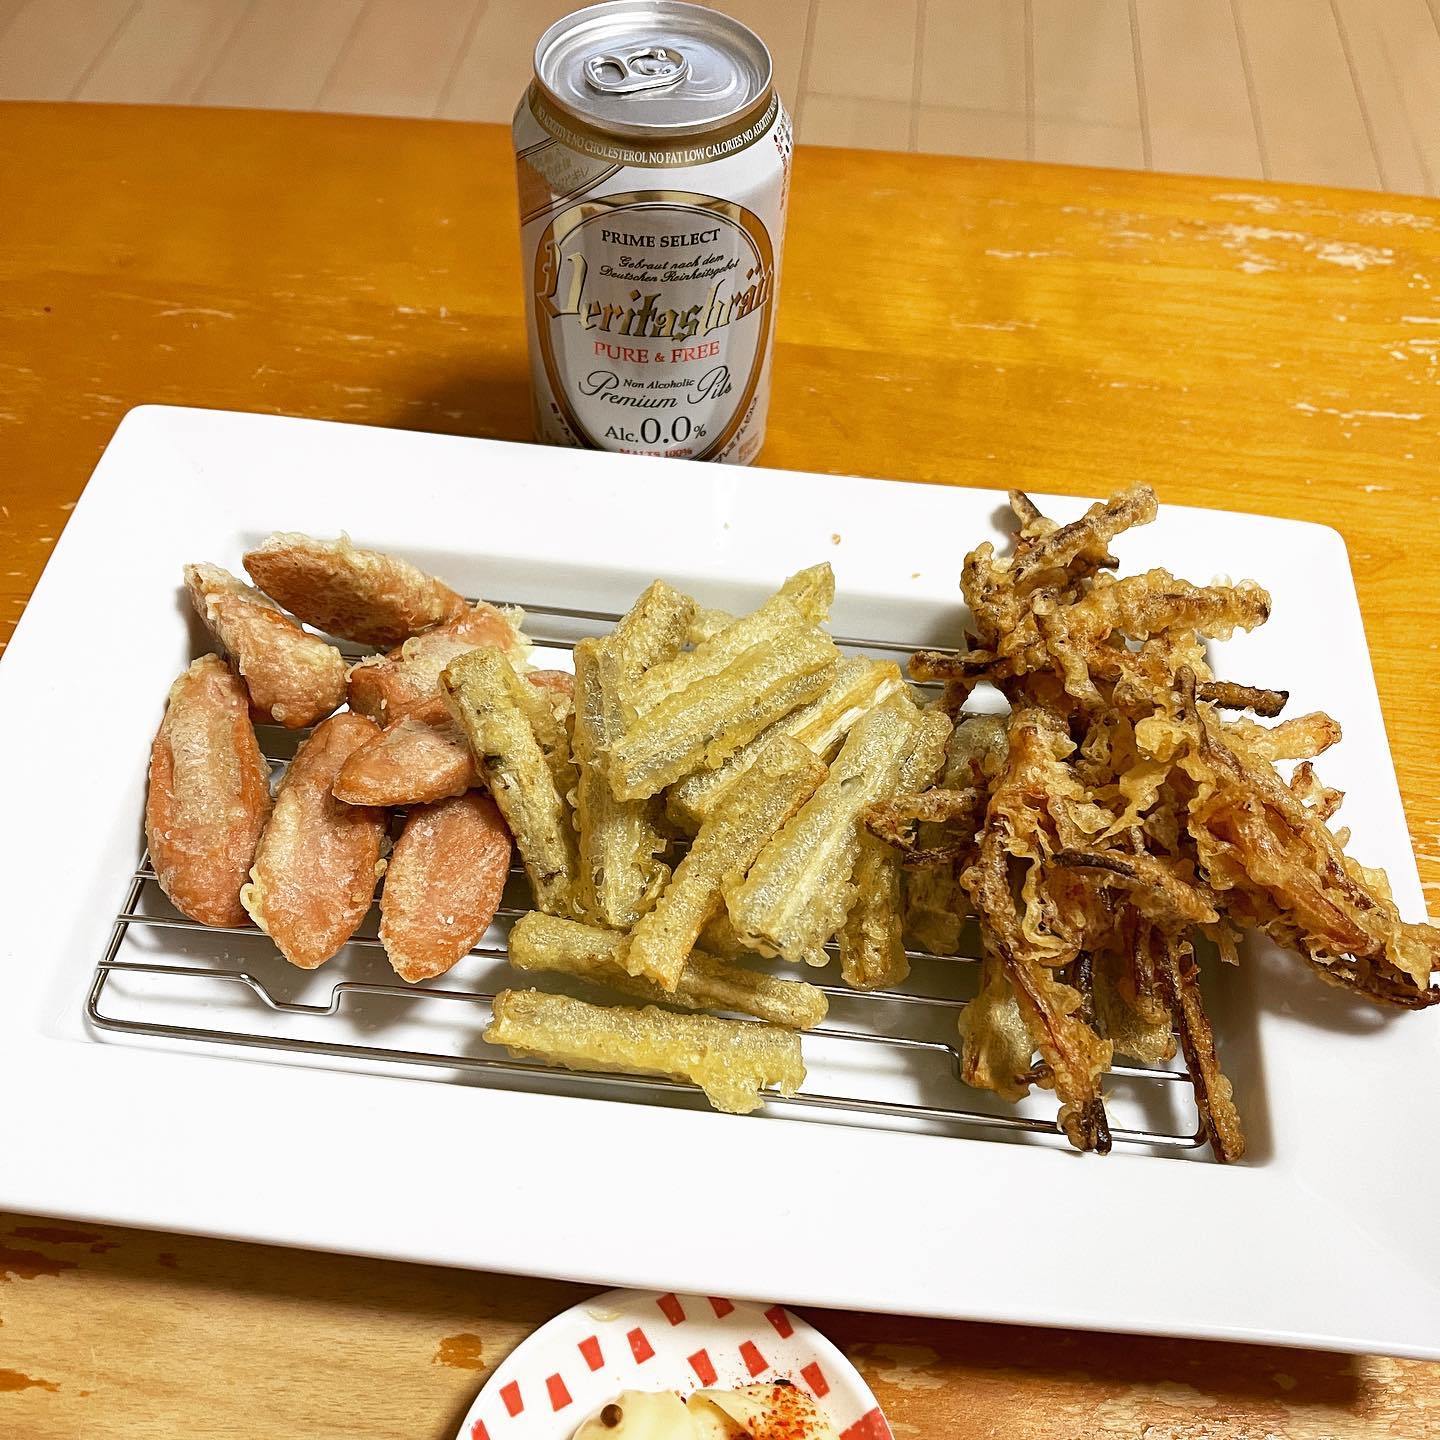 今夜は、関西の居酒屋メニューにあると聞きかじったさきイカの天ぷらを作ってみました。魚肉ソーセージとごぼうの天ぷらも。さきイカは、もっとやわらかいのを使ったほうが良かったかも。#さきイカの天ぷら #さきイカ #天ぷら #ノンアルコール #ノンアルコールビール #ヴェリタスブロイ #ごぼうの天ぷら #魚肉ソーセージ #魚肉ソーセージの天ぷら #糖質制限ダイエット #糖質制限レシピ #糖質制限 #糖質オフダイエット #糖質オフレシピ #糖質オフ #糖質off #糖質offアドバイザー #糖質offレシピ #手料理 #手料理グラム